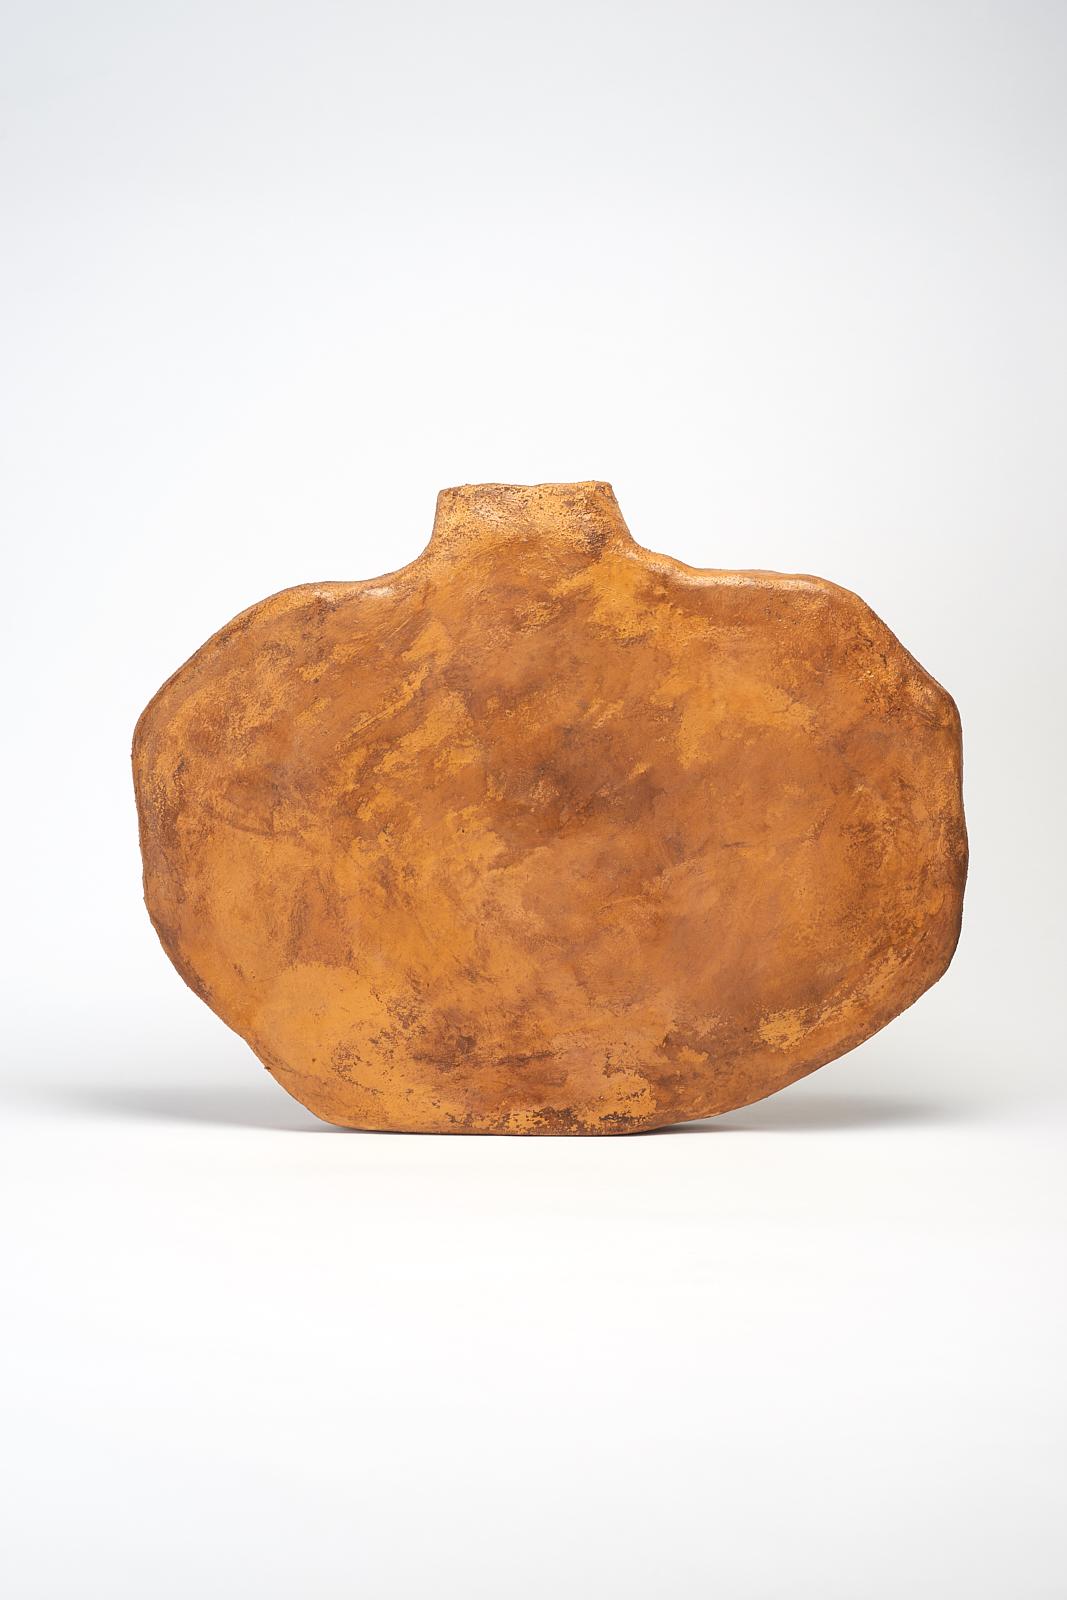 Farik-Vase von Willem Van hooff
Kerngefäß-Serie
Abmessungen: B 50 x H 42 cm (Die Maße können variieren, da die Stücke handgefertigt sind und leichte Größenabweichungen aufweisen können)
MATERIALIEN: Steingut, Keramik, Pigmente, Glasur

Core ist eine